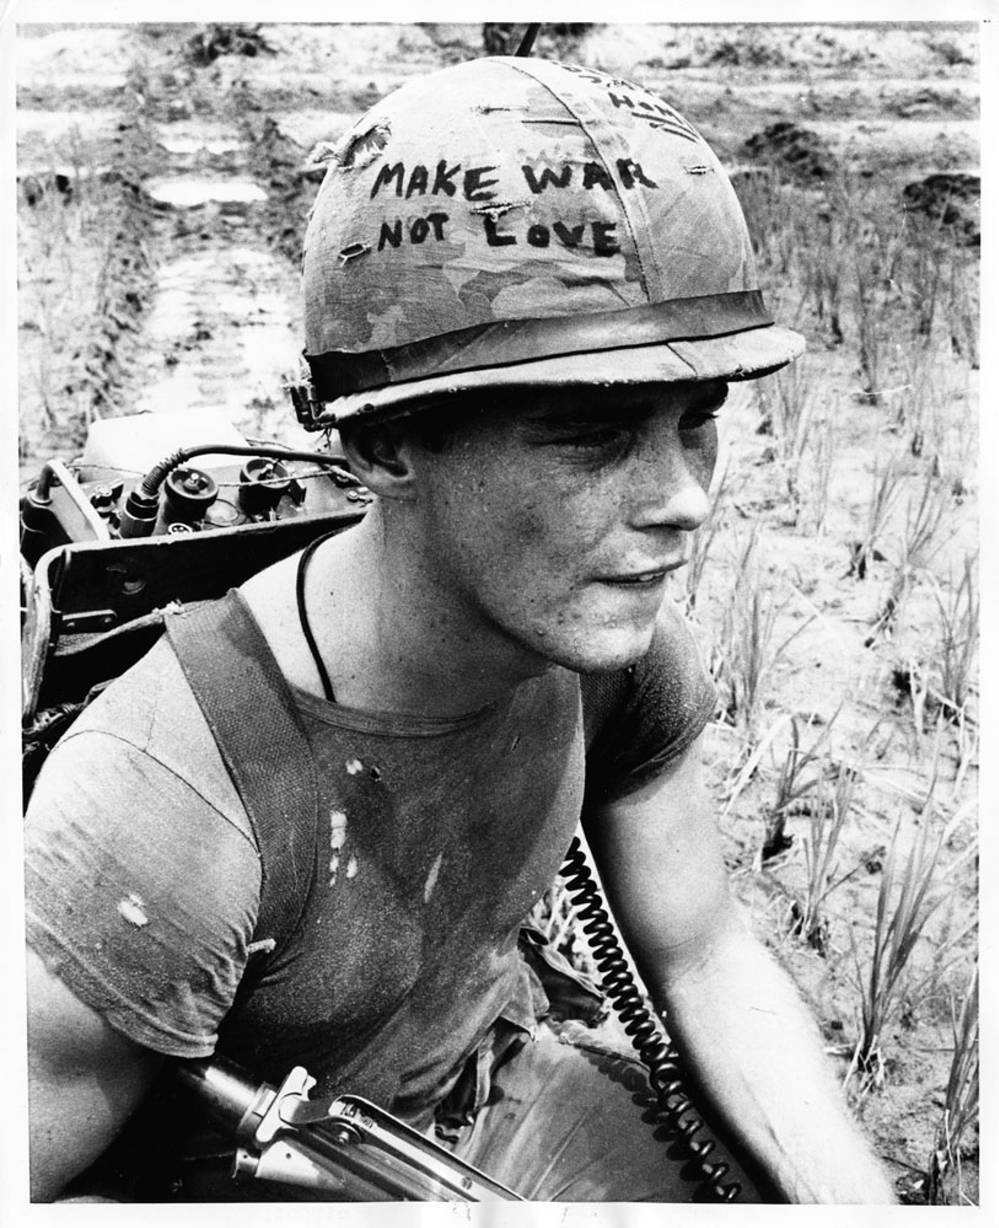 make war not love photo vietnam